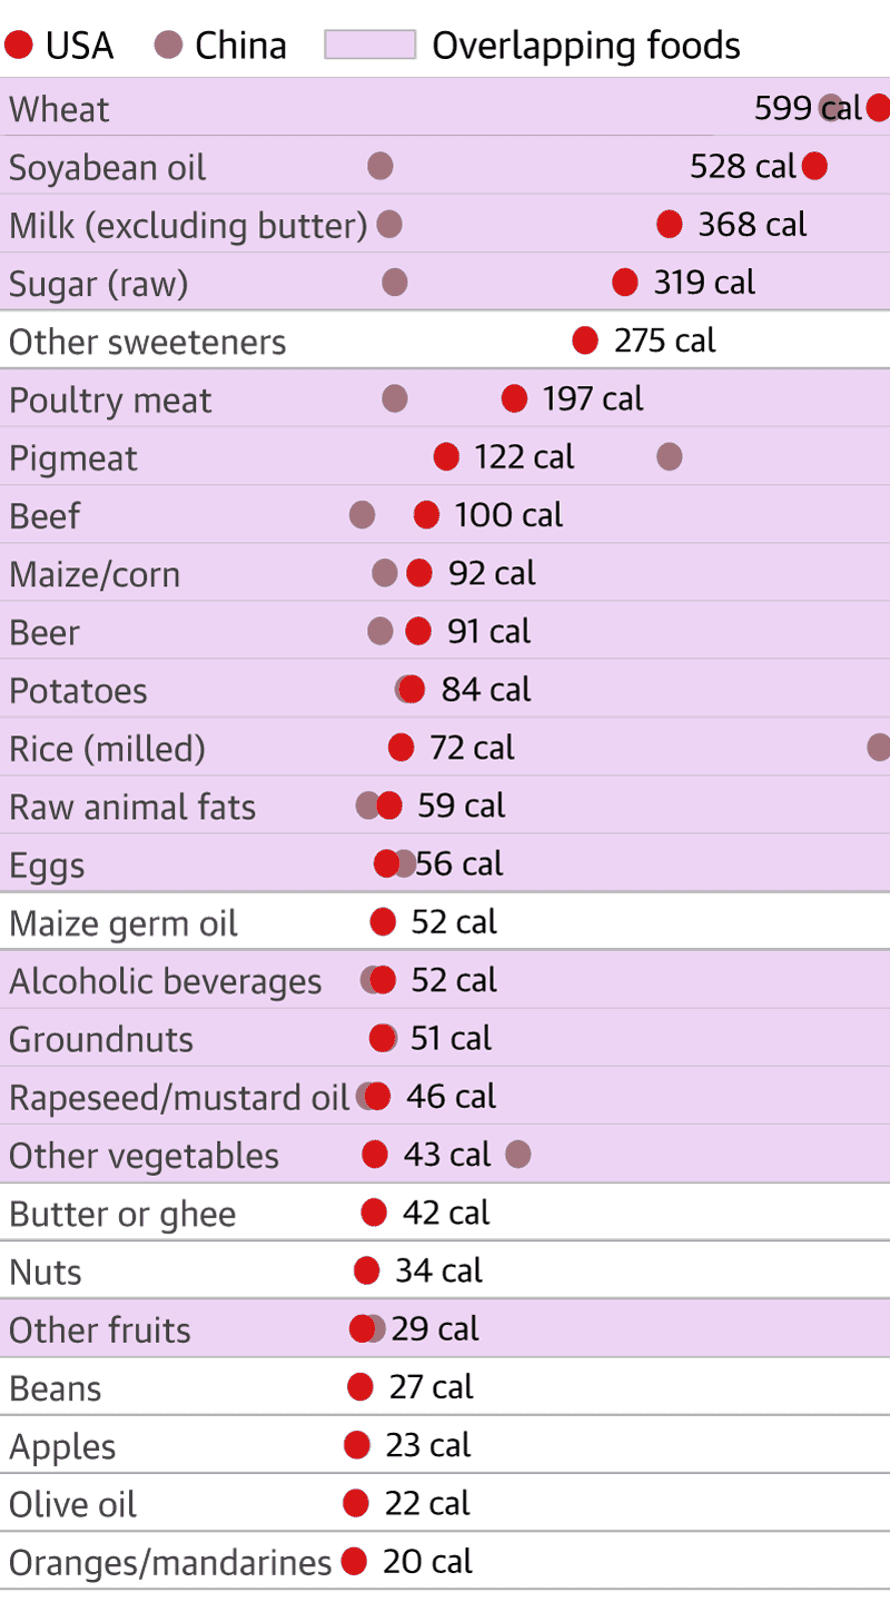 Μια λίστα που εμφανίζει τρόφιμα το 2013 που αντιστοιχούσαν σε 20 ή περισσότερες θερμίδες την ημέρα στις ΗΠΑ και την Κίνα. Ο αριθμός των τροφίμων που επικαλύπτονται με ροζ χρώμα είναι σημαντικά μεγαλύτερος: σιτάρι, σογιέλαιο, γάλα (εκτός βουτύρου), ζάχαρη (ακατέργαστη) , κρέας πουλερικών, χοιρινό κρέας, βόειο κρέας, καλαμπόκι/καλαμπόκι, μπύρα, πατάτες, ρύζι (αλεσμένο), ωμά ζωικά λίπη, αυγά, αλκοολούχα ποτά, αραχίδες, κραμβέλαιο/σινάπι, άλλα λαχανικά, άλλα φρούτα